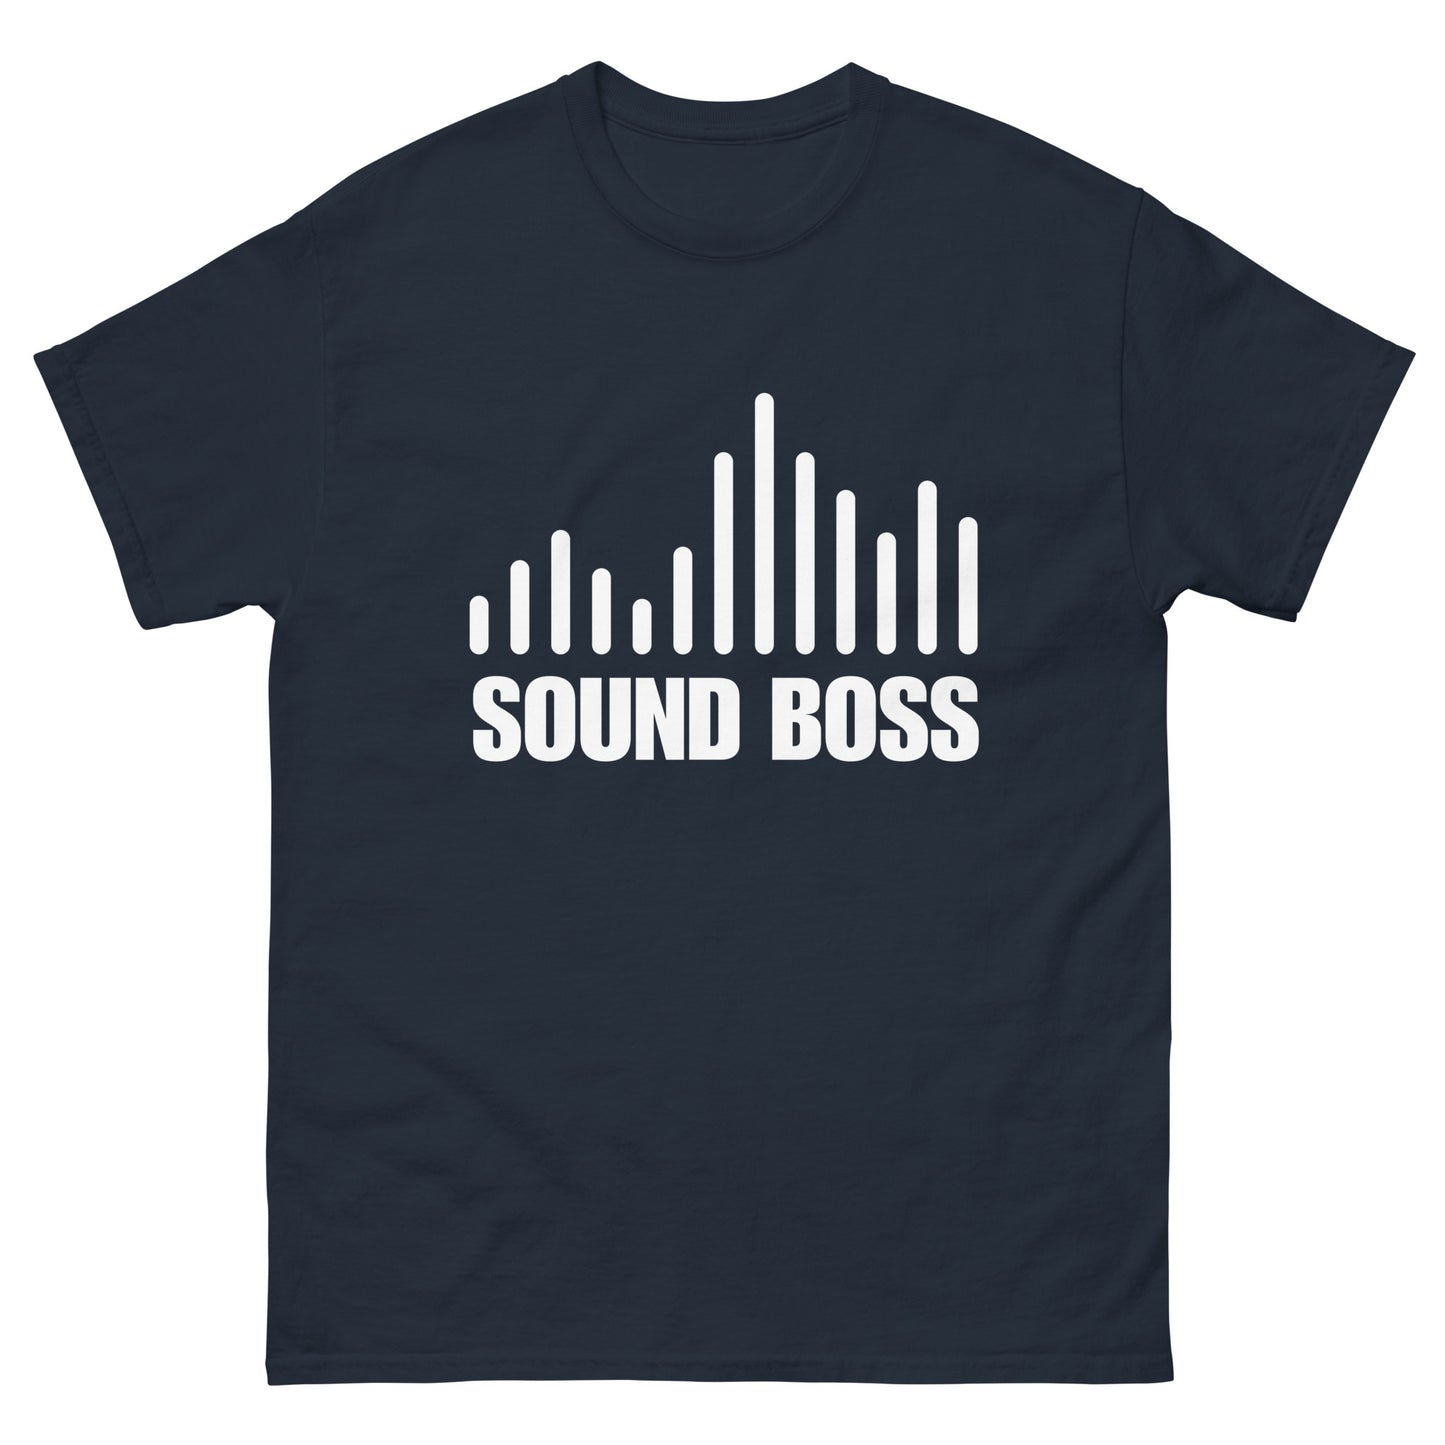 Sound Boss - classic tee